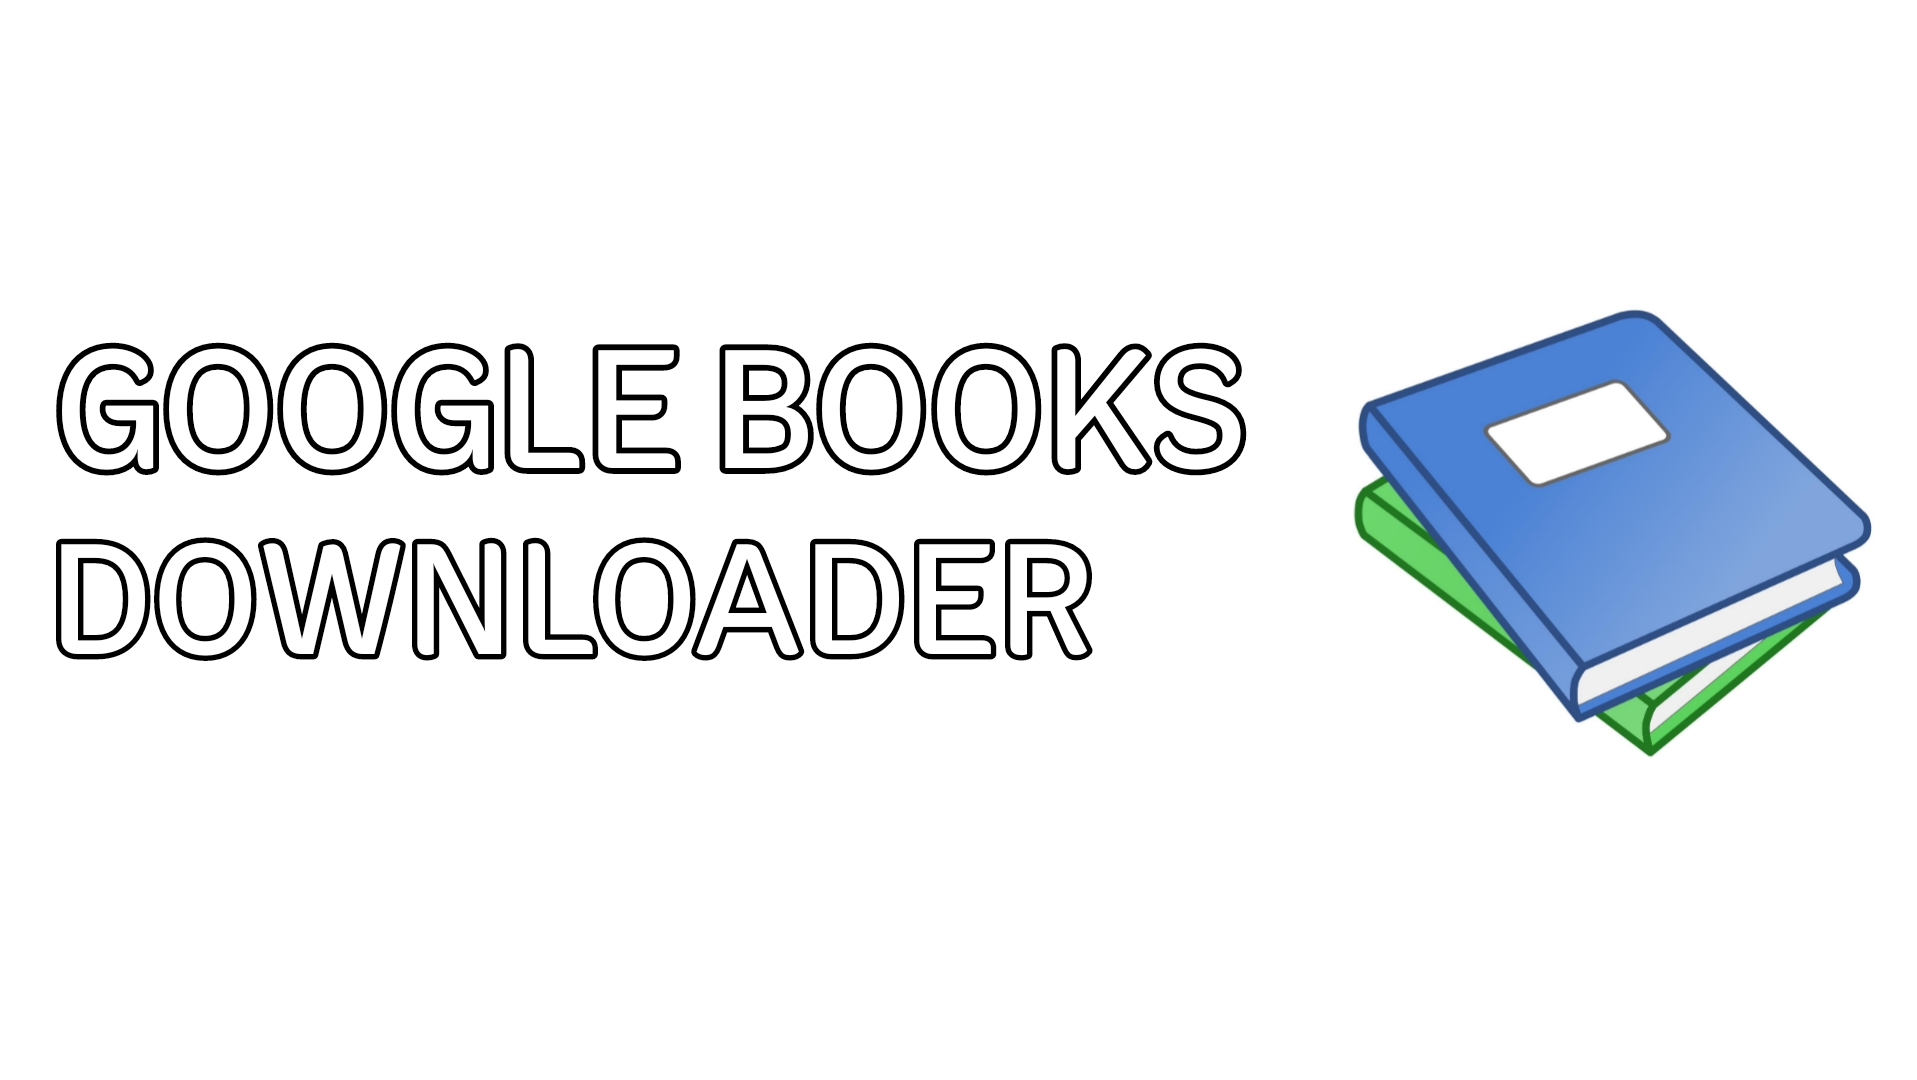 Cara Download Buku Dari Google Books Secara Gratis - Google books